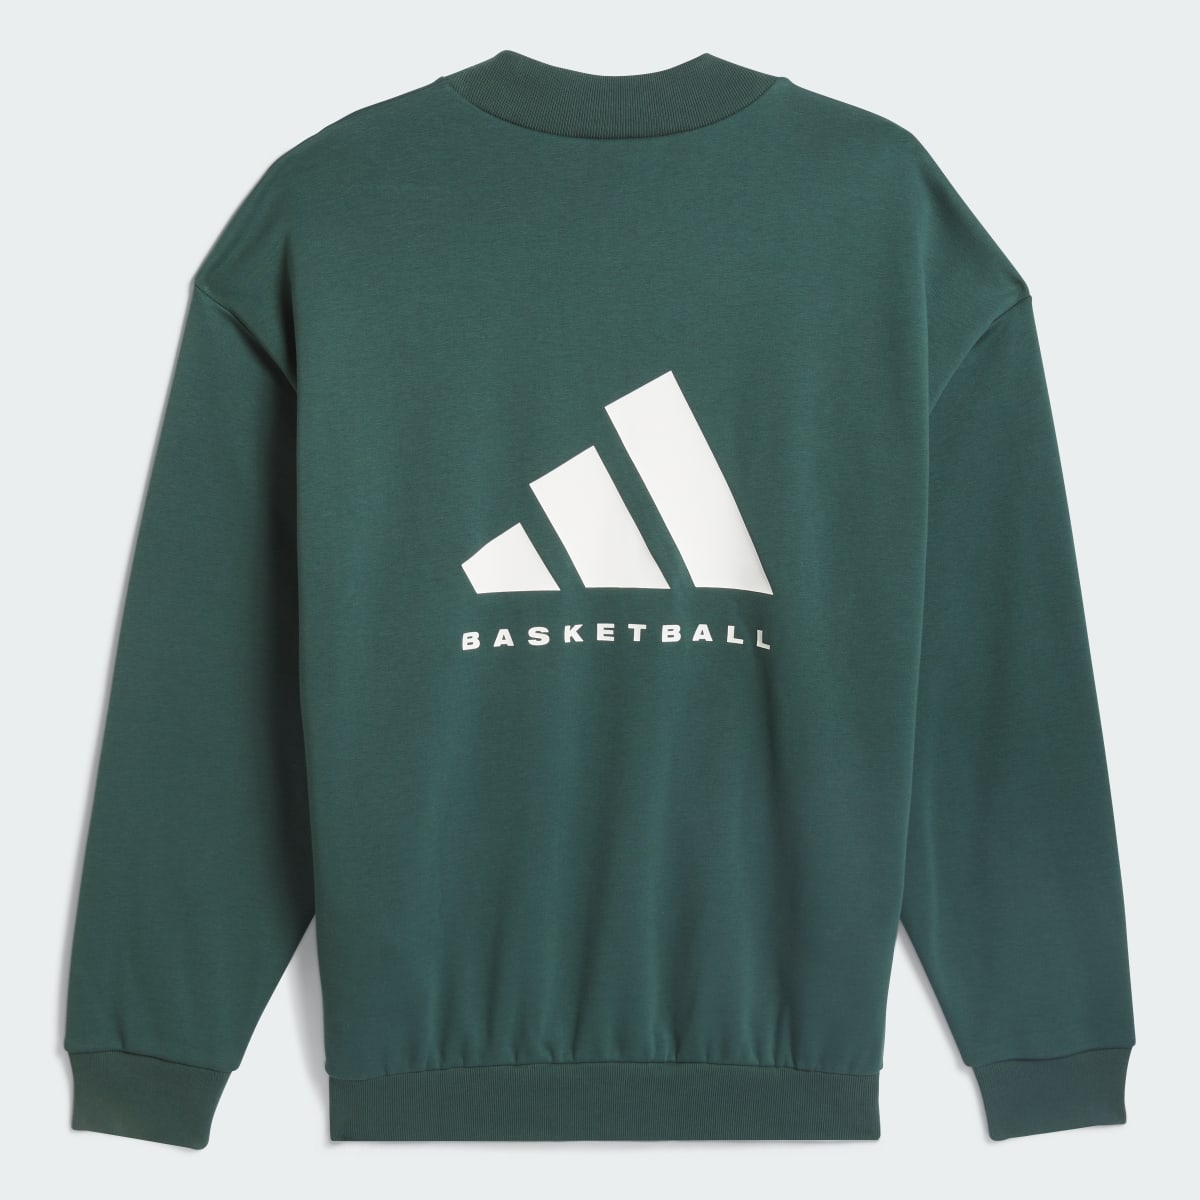 Adidas Sweatshirt adidas Basketball. 5